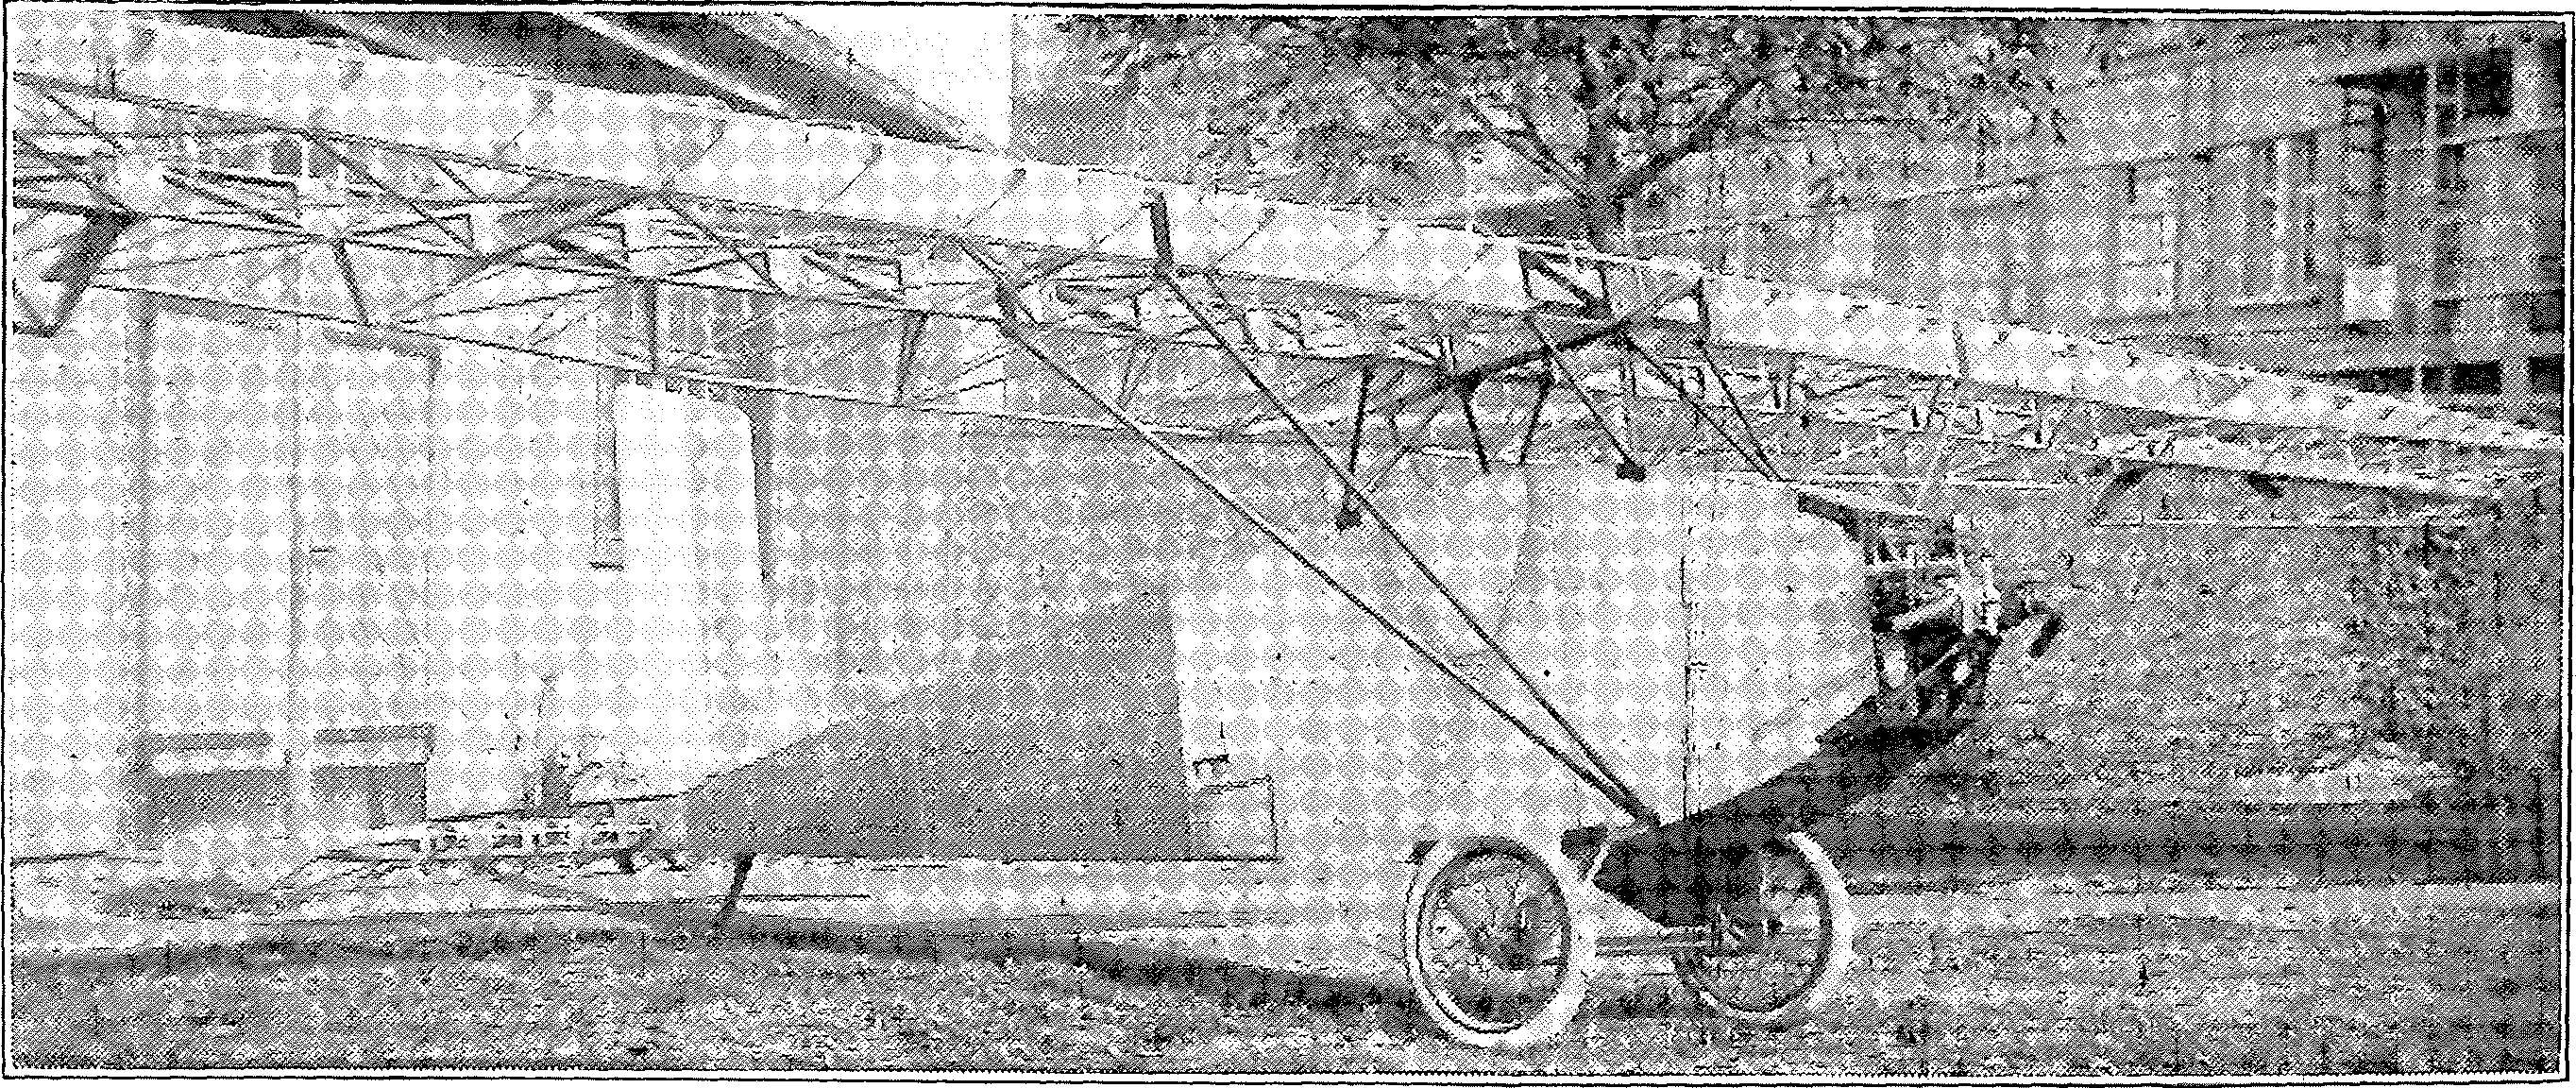 Segelflug, Motorflug und Modellflug sowie Luftfahrt und Luftverkehr im Deutschen Reich (Weimarer Republik) im Jahre 1925